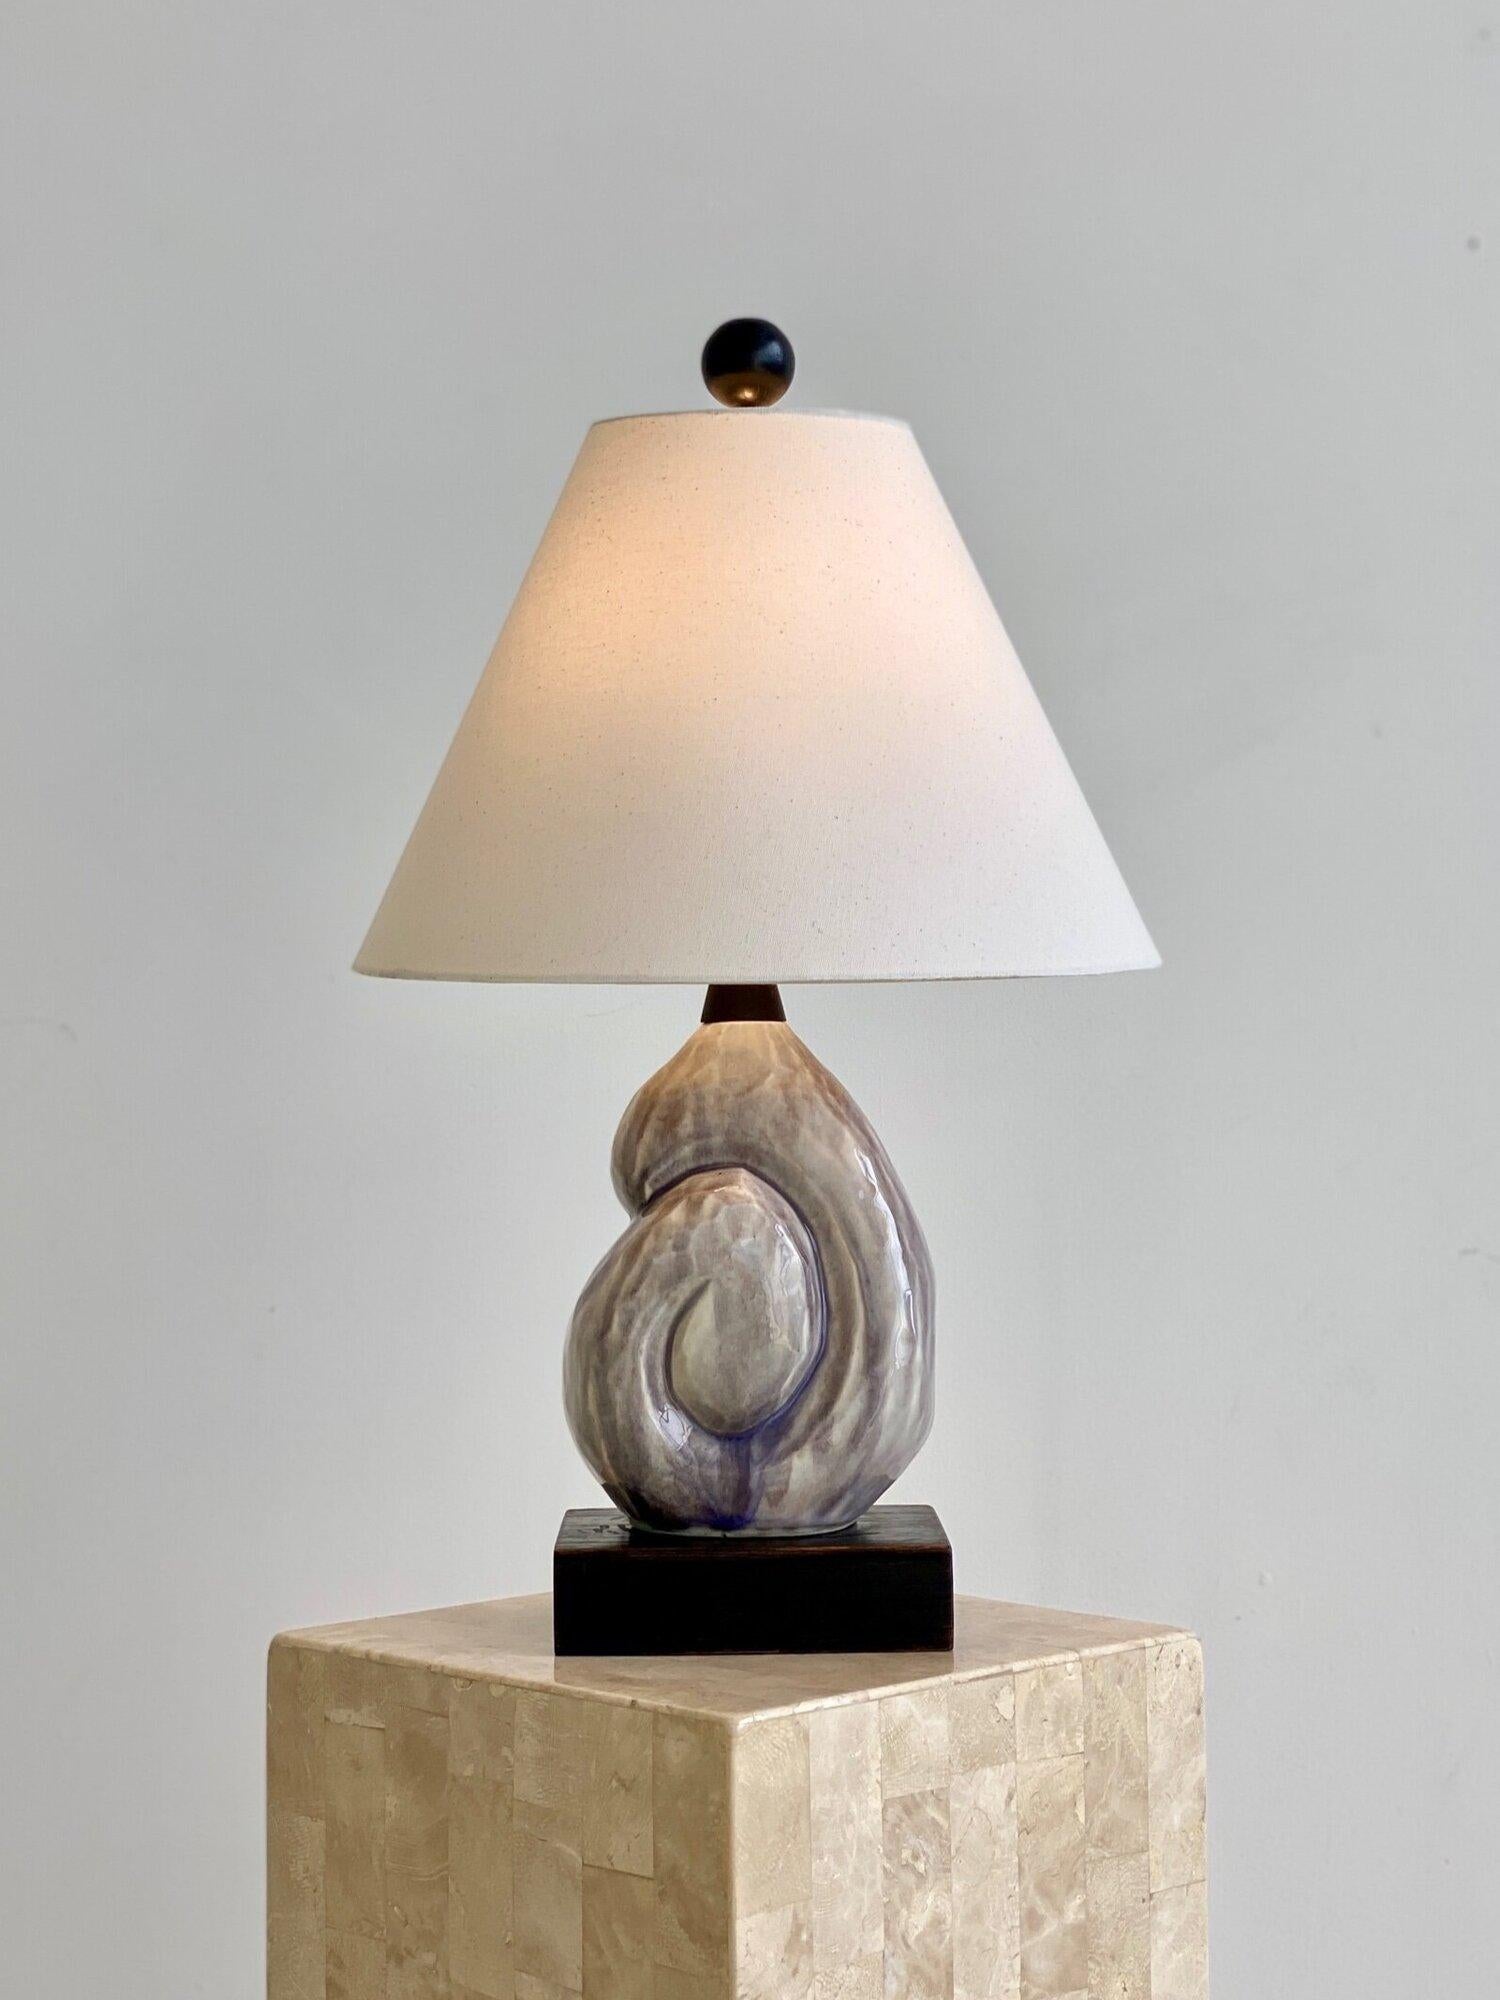 Rare lampe Nautilus Shell en céramique émaillée lavande montée par Yasha Heifetz, Circa 1950. Un magnifique rendu biomorphique d'un coquillage de nautile à la surface tachetée, émaillé dans des tons de lavande et de gris froid. Le choix de la